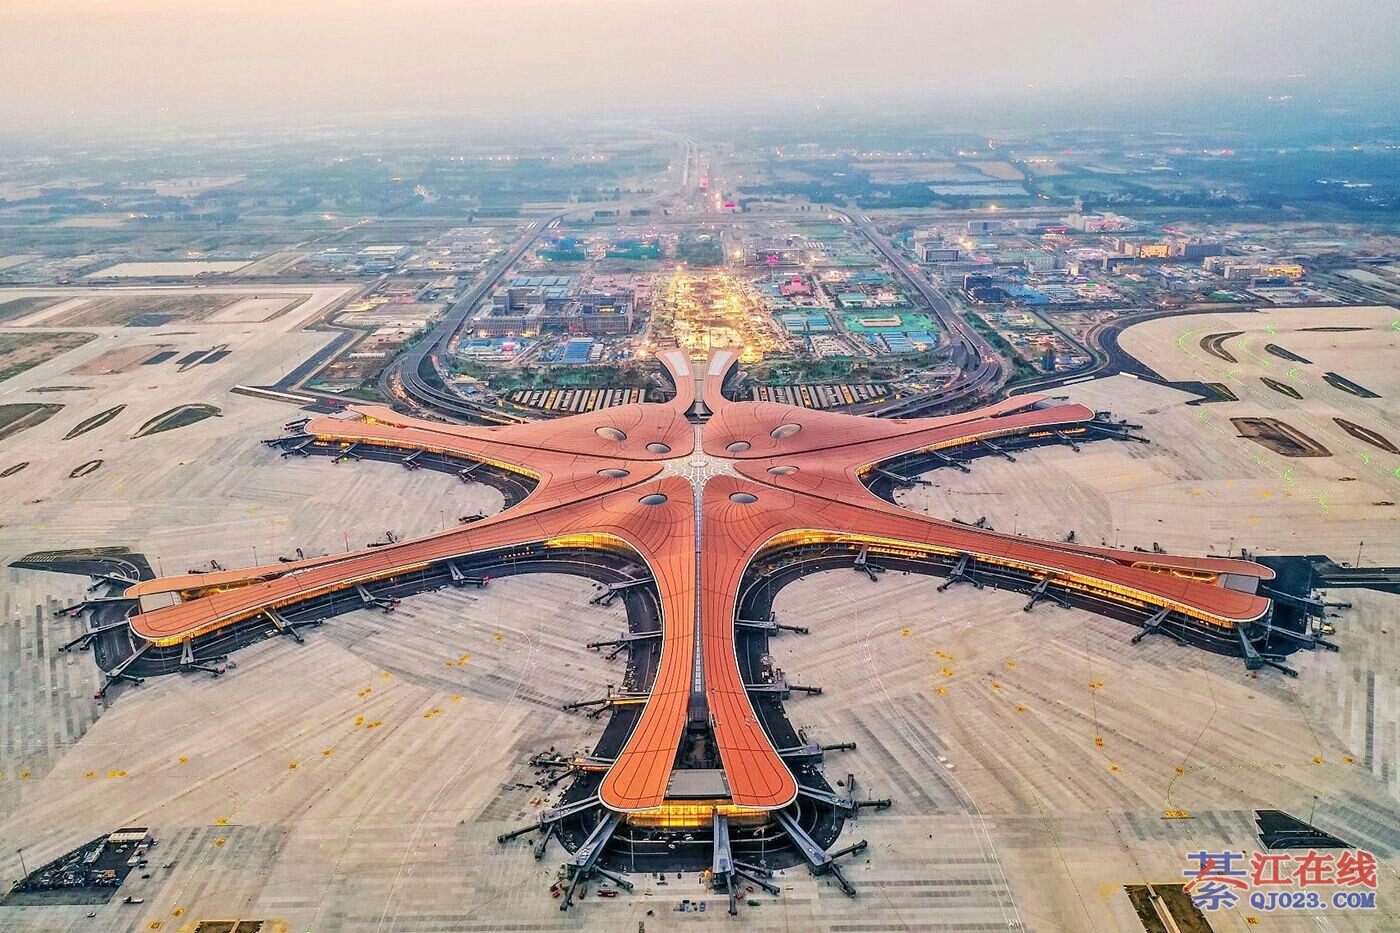 定了重庆第二机场初步选址在重庆璧山区南部正兴镇附近